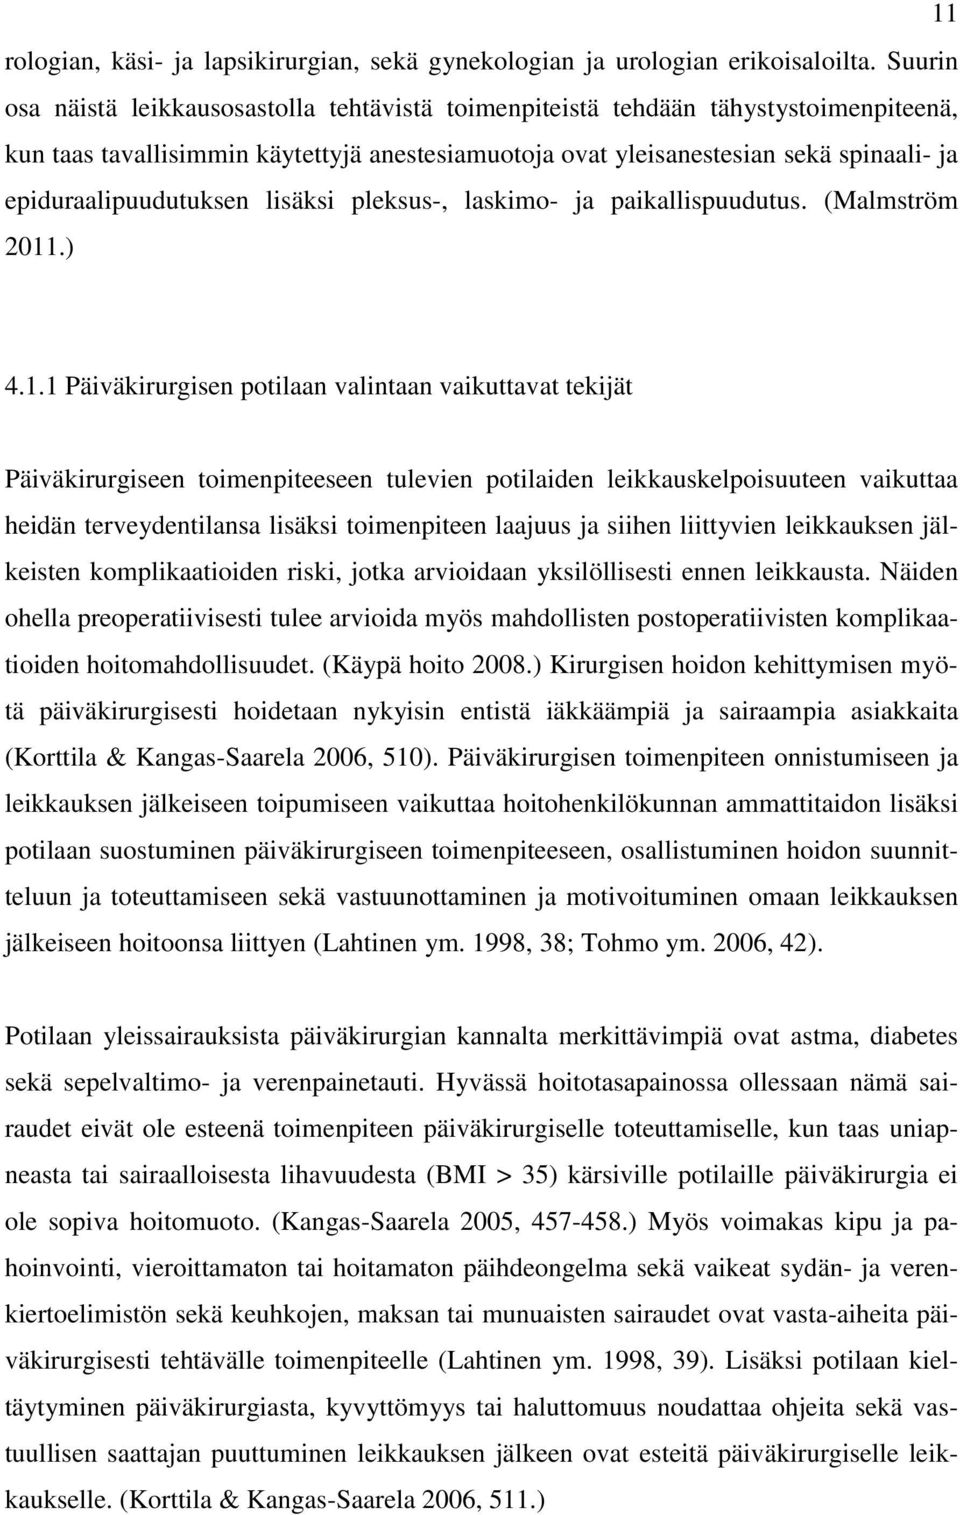 epiduraalipuudutuksen lisäksi pleksus-, laskimo- ja paikallispuudutus. (Malmström 2011